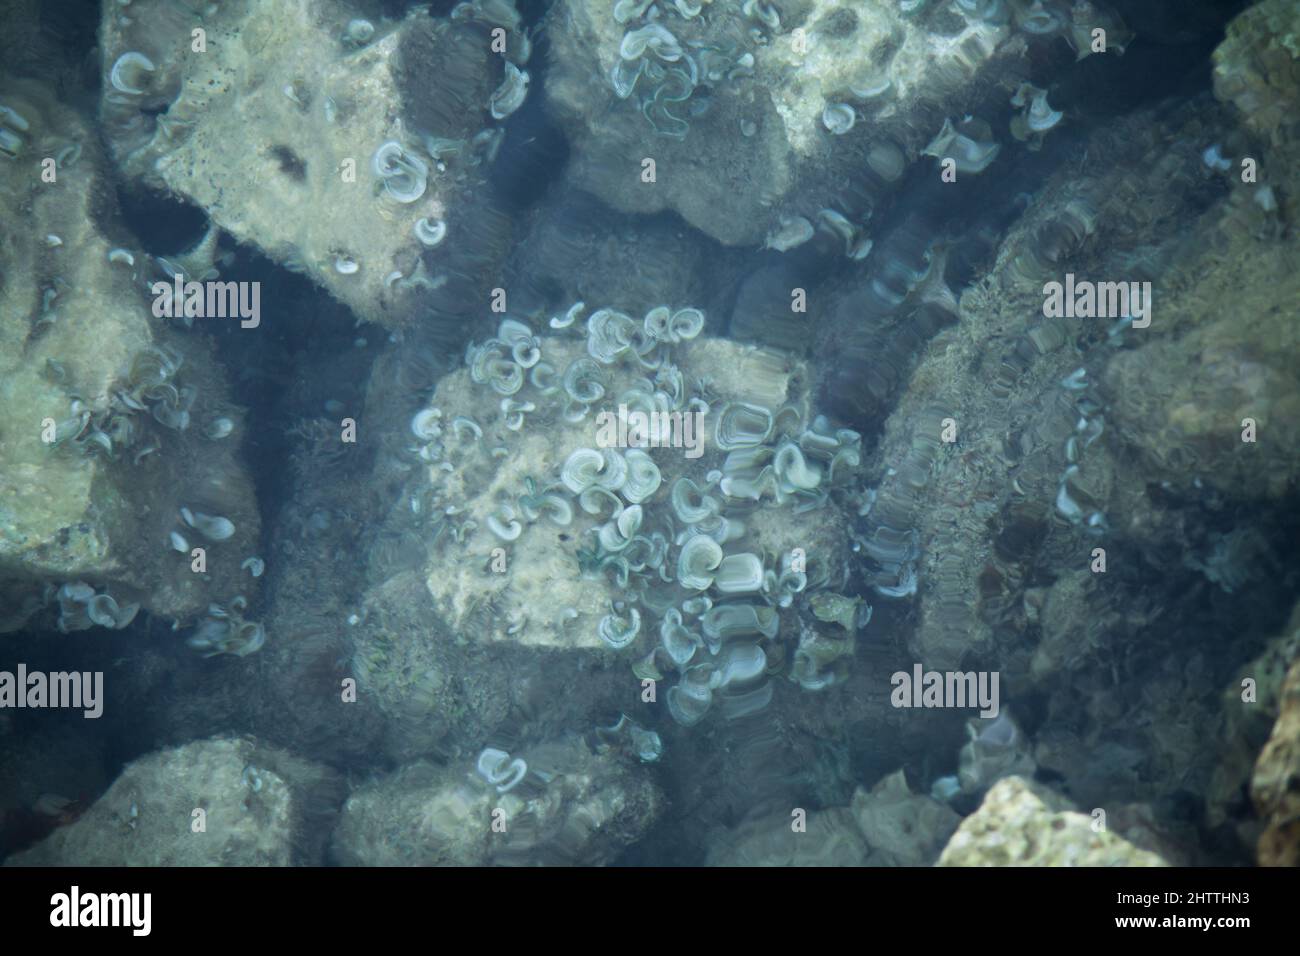 coralli di mare su una pietra nel mare. Display chiaro a causa dell'acqua. Foto Stock